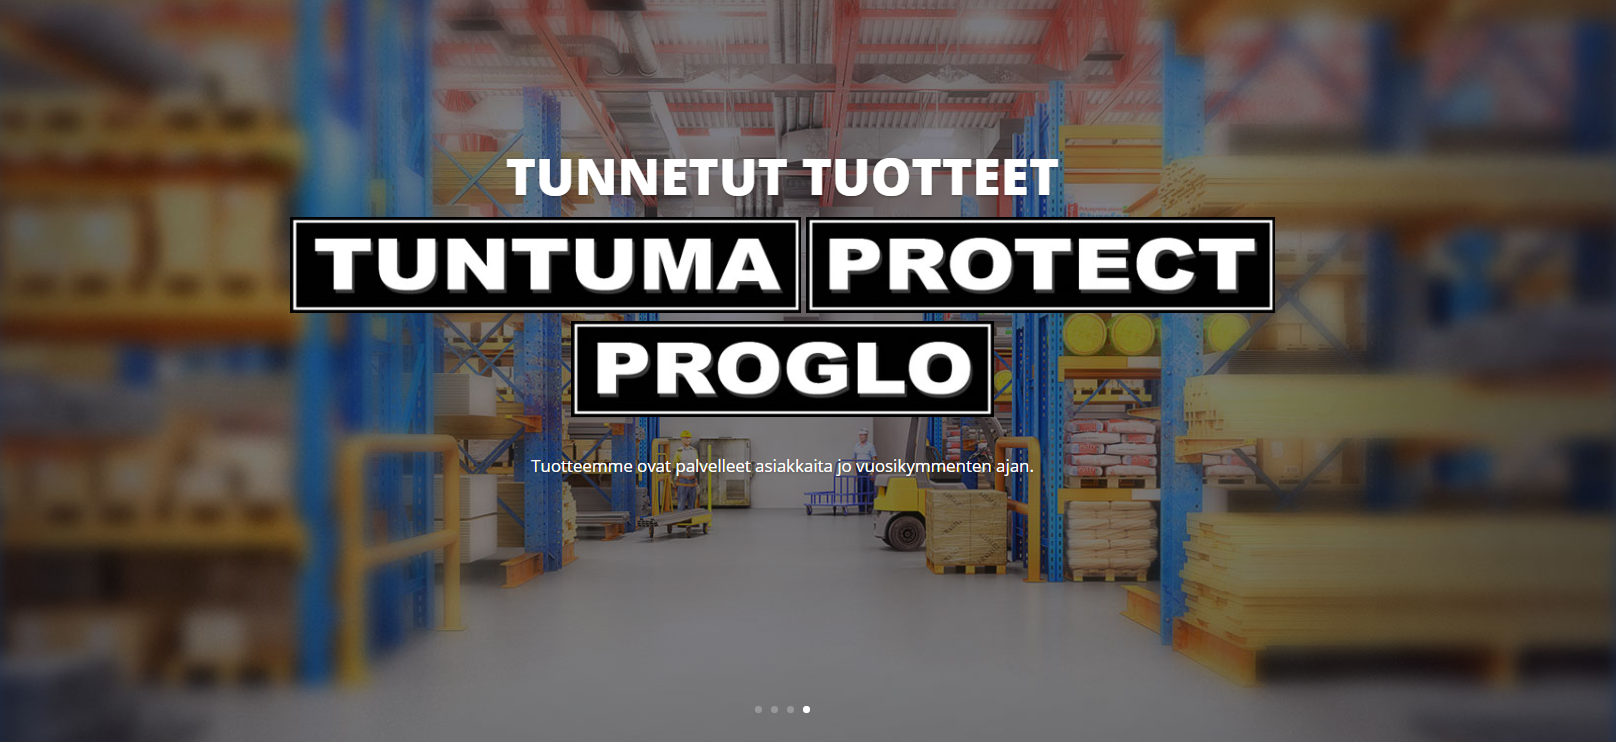 Tunnettuja tuotteita esimerkiksi Tuntuma, Protect ja Proglo.